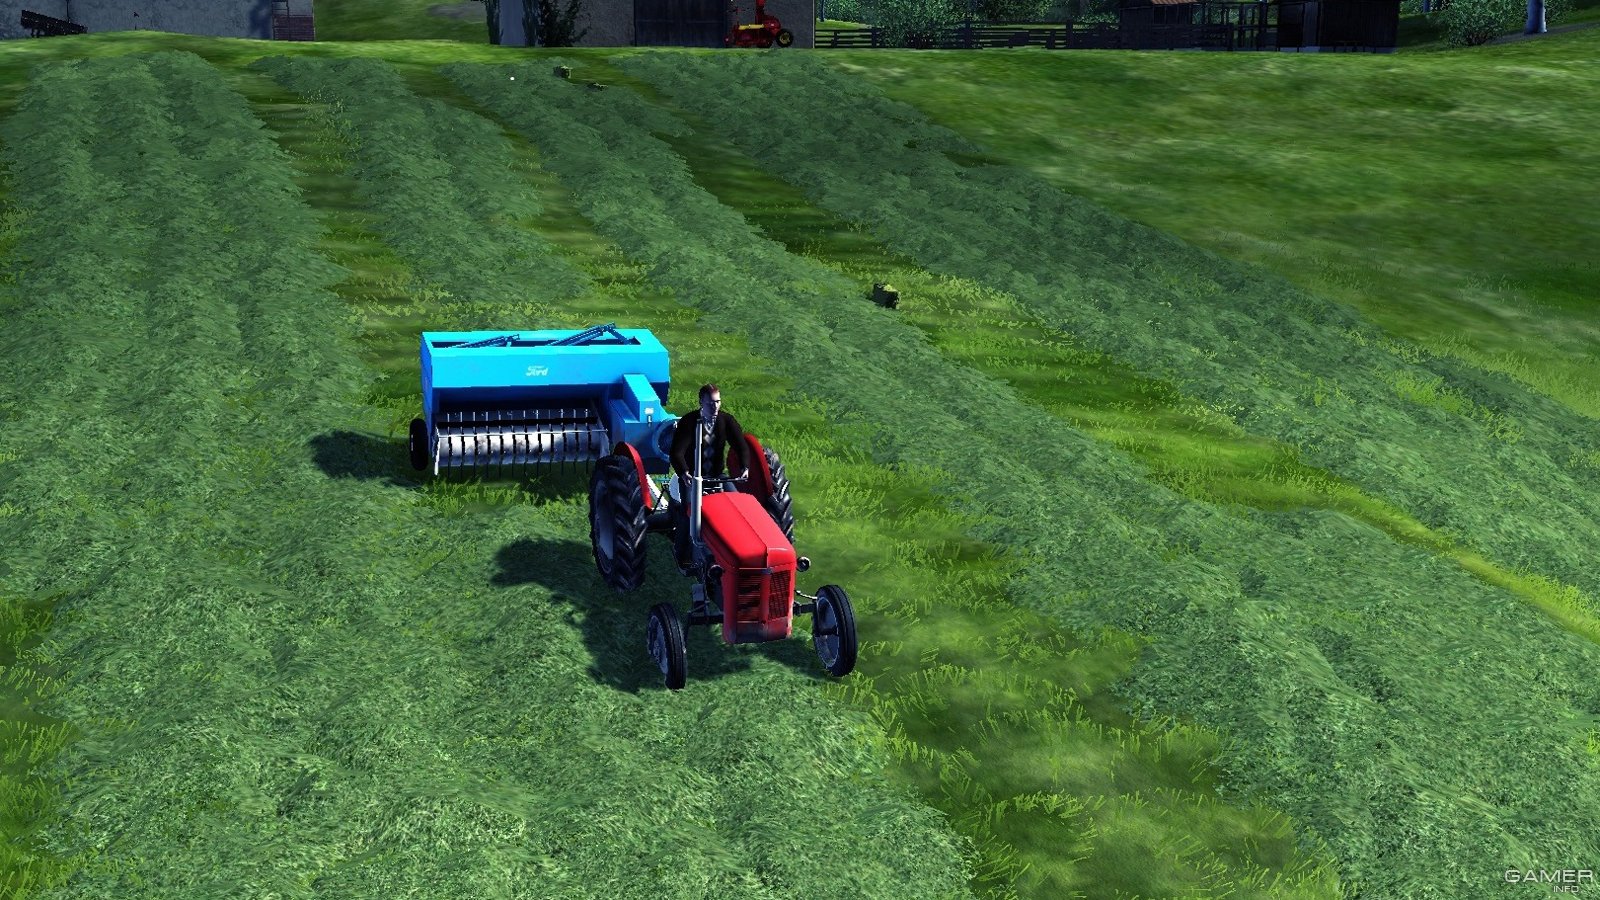 farming simulator 2012 download torrent